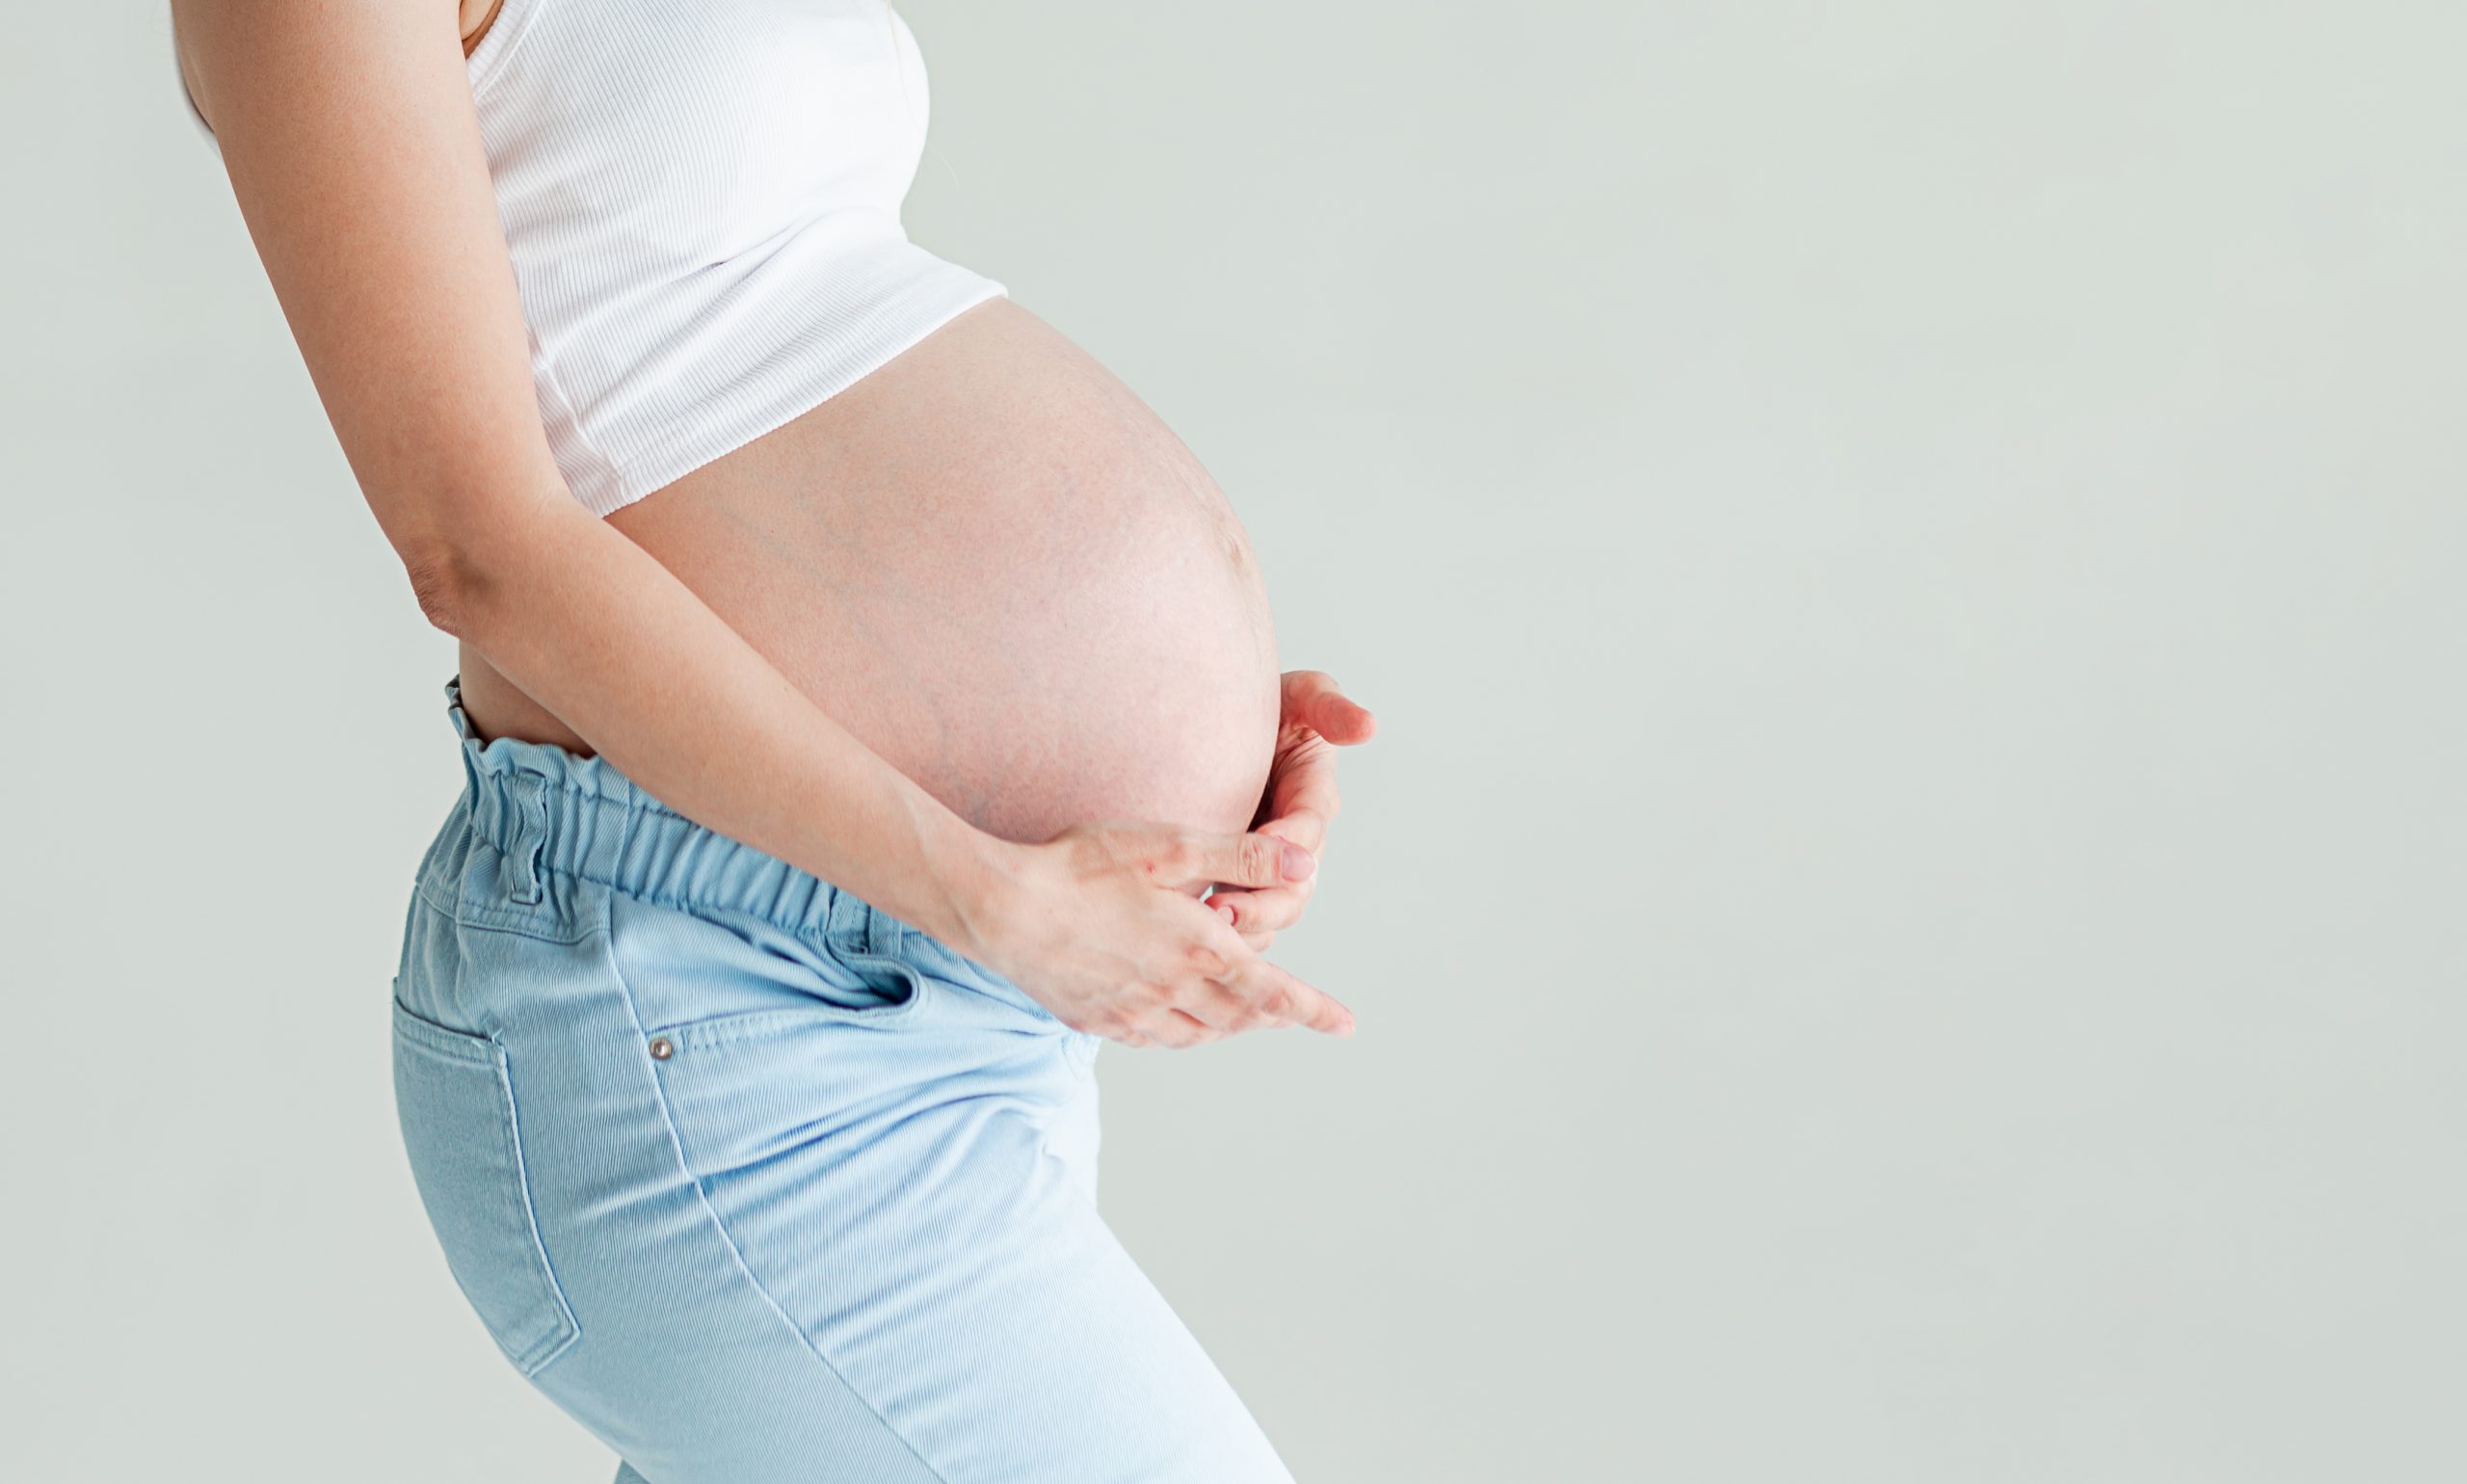 Frau legt beide Hände auf ihren schwangeren Bauch, kurz vor Ende der Schwangerschaft (42. SSW)